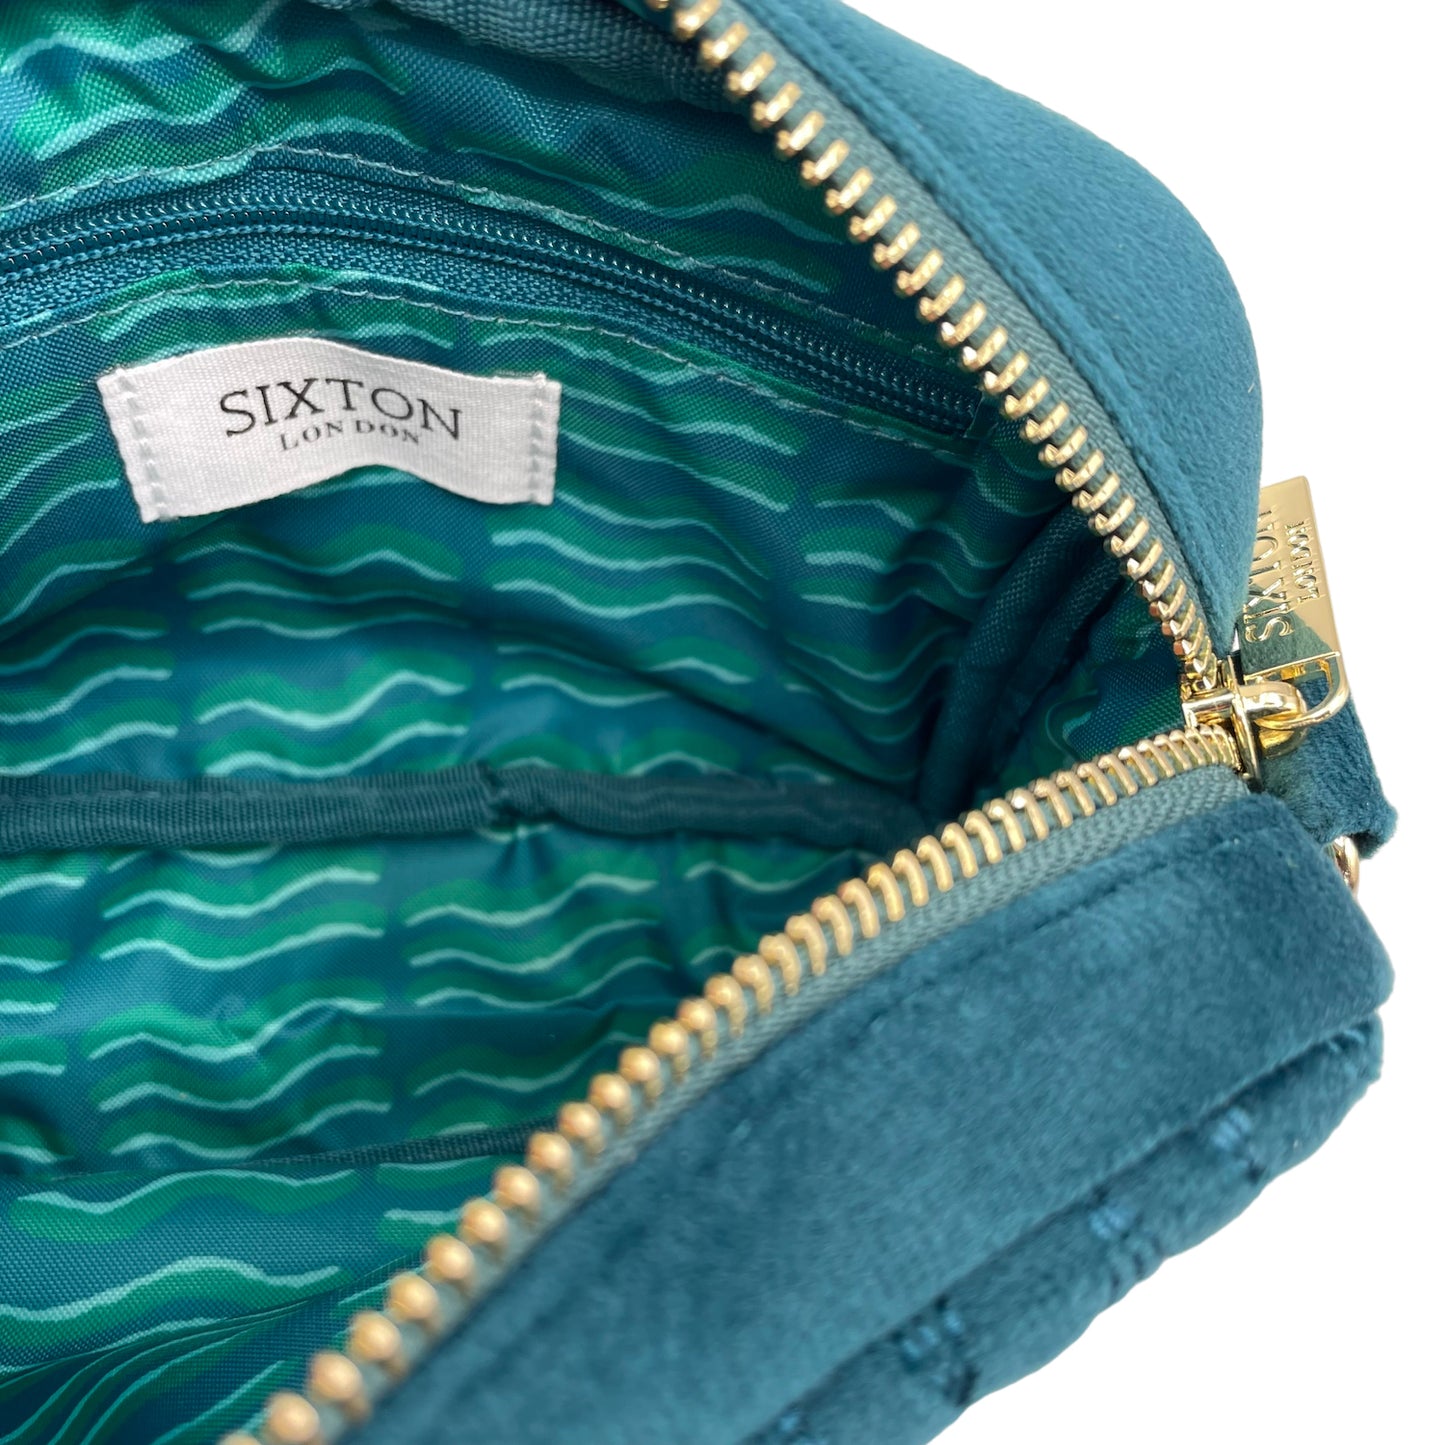 Velvet Rivington handbag in teal, recycled velvet